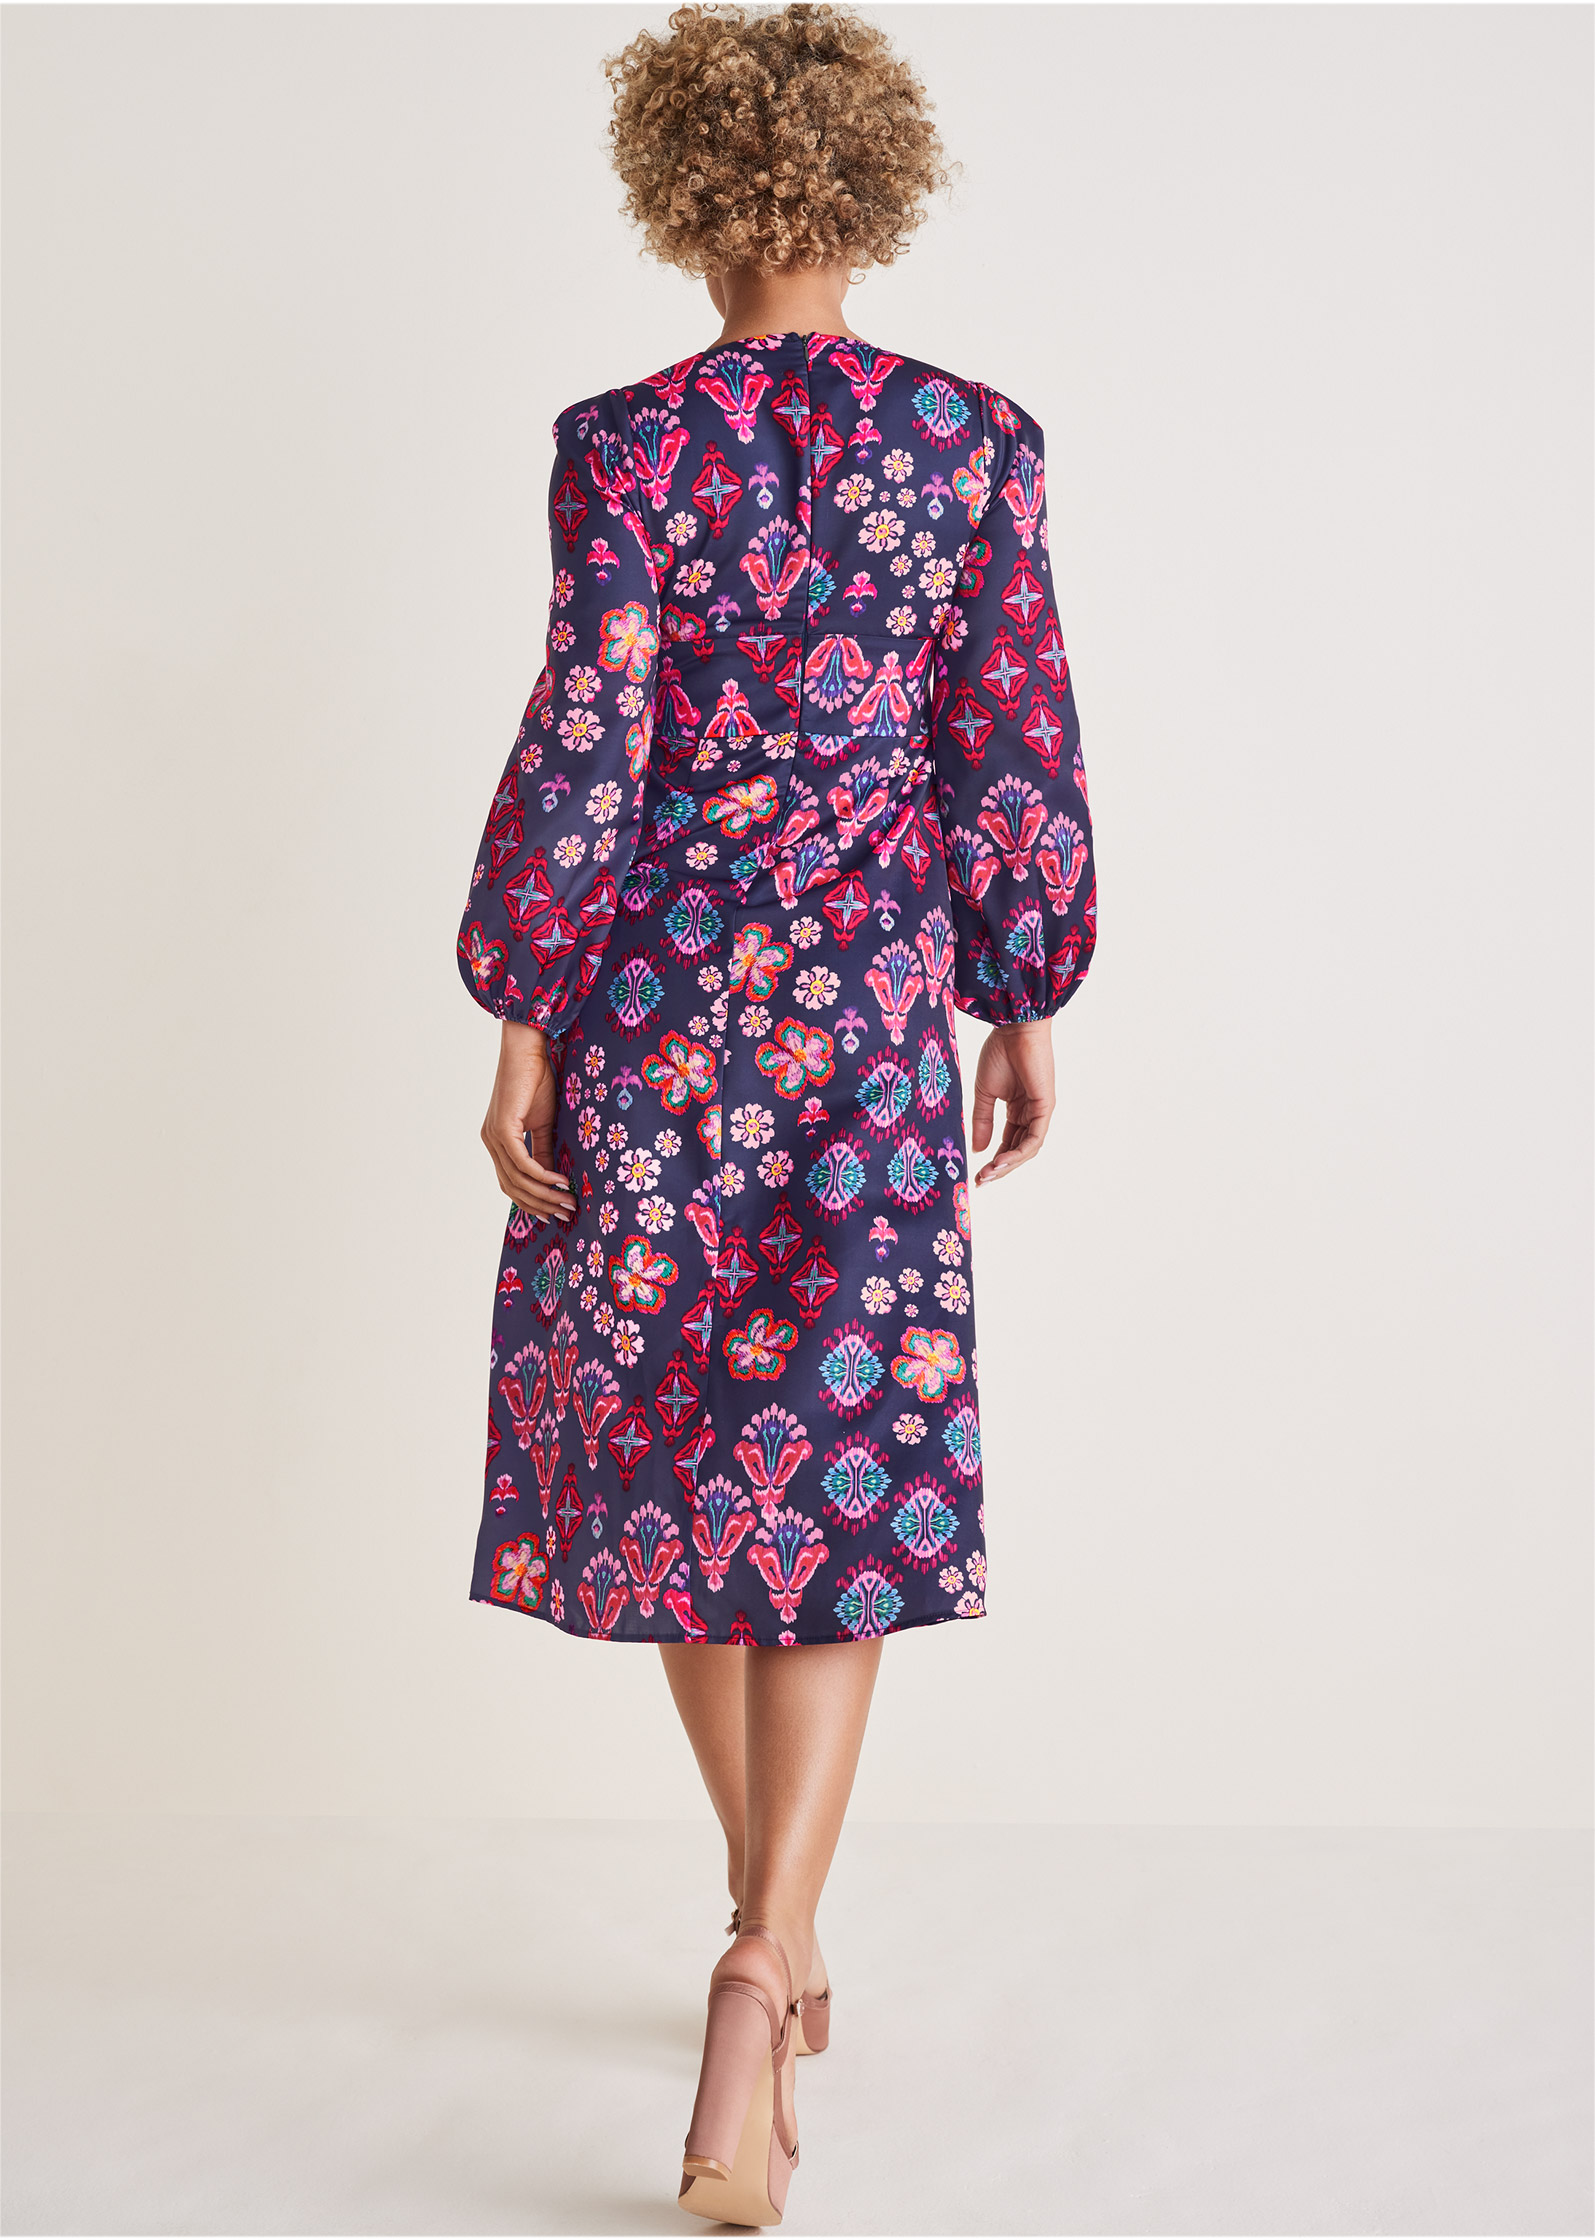 Long Sleeve Printed Dress in Modern Folk Floral | VENUS